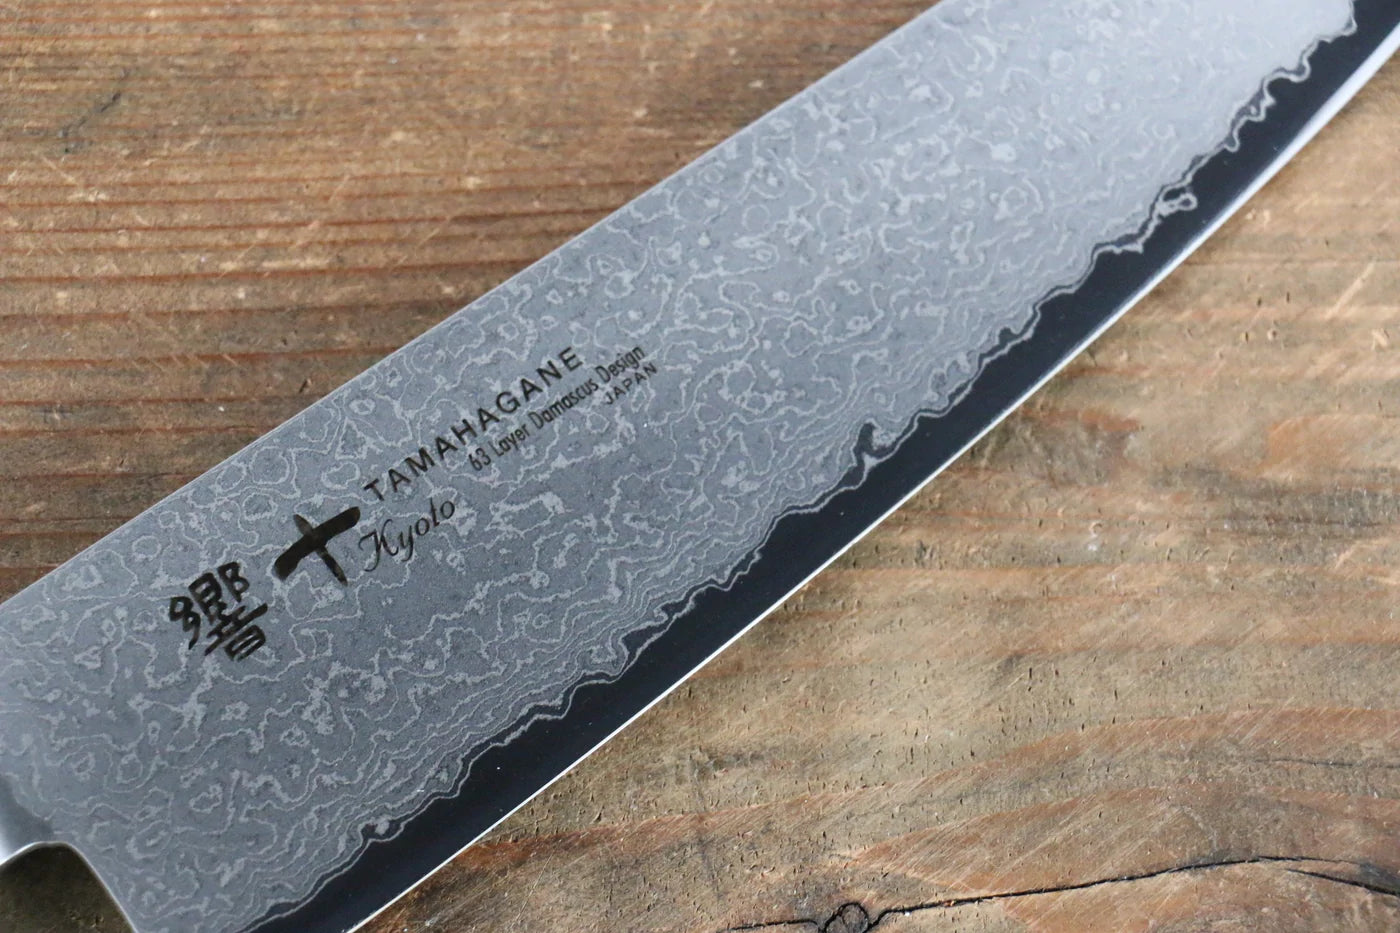 Marke Tamahagane Ancient Capital Kyoto 63 Lagen Damaststahl Mehrzweckmesser Gyuto Japanisches Messer 180 mm KP-1106 